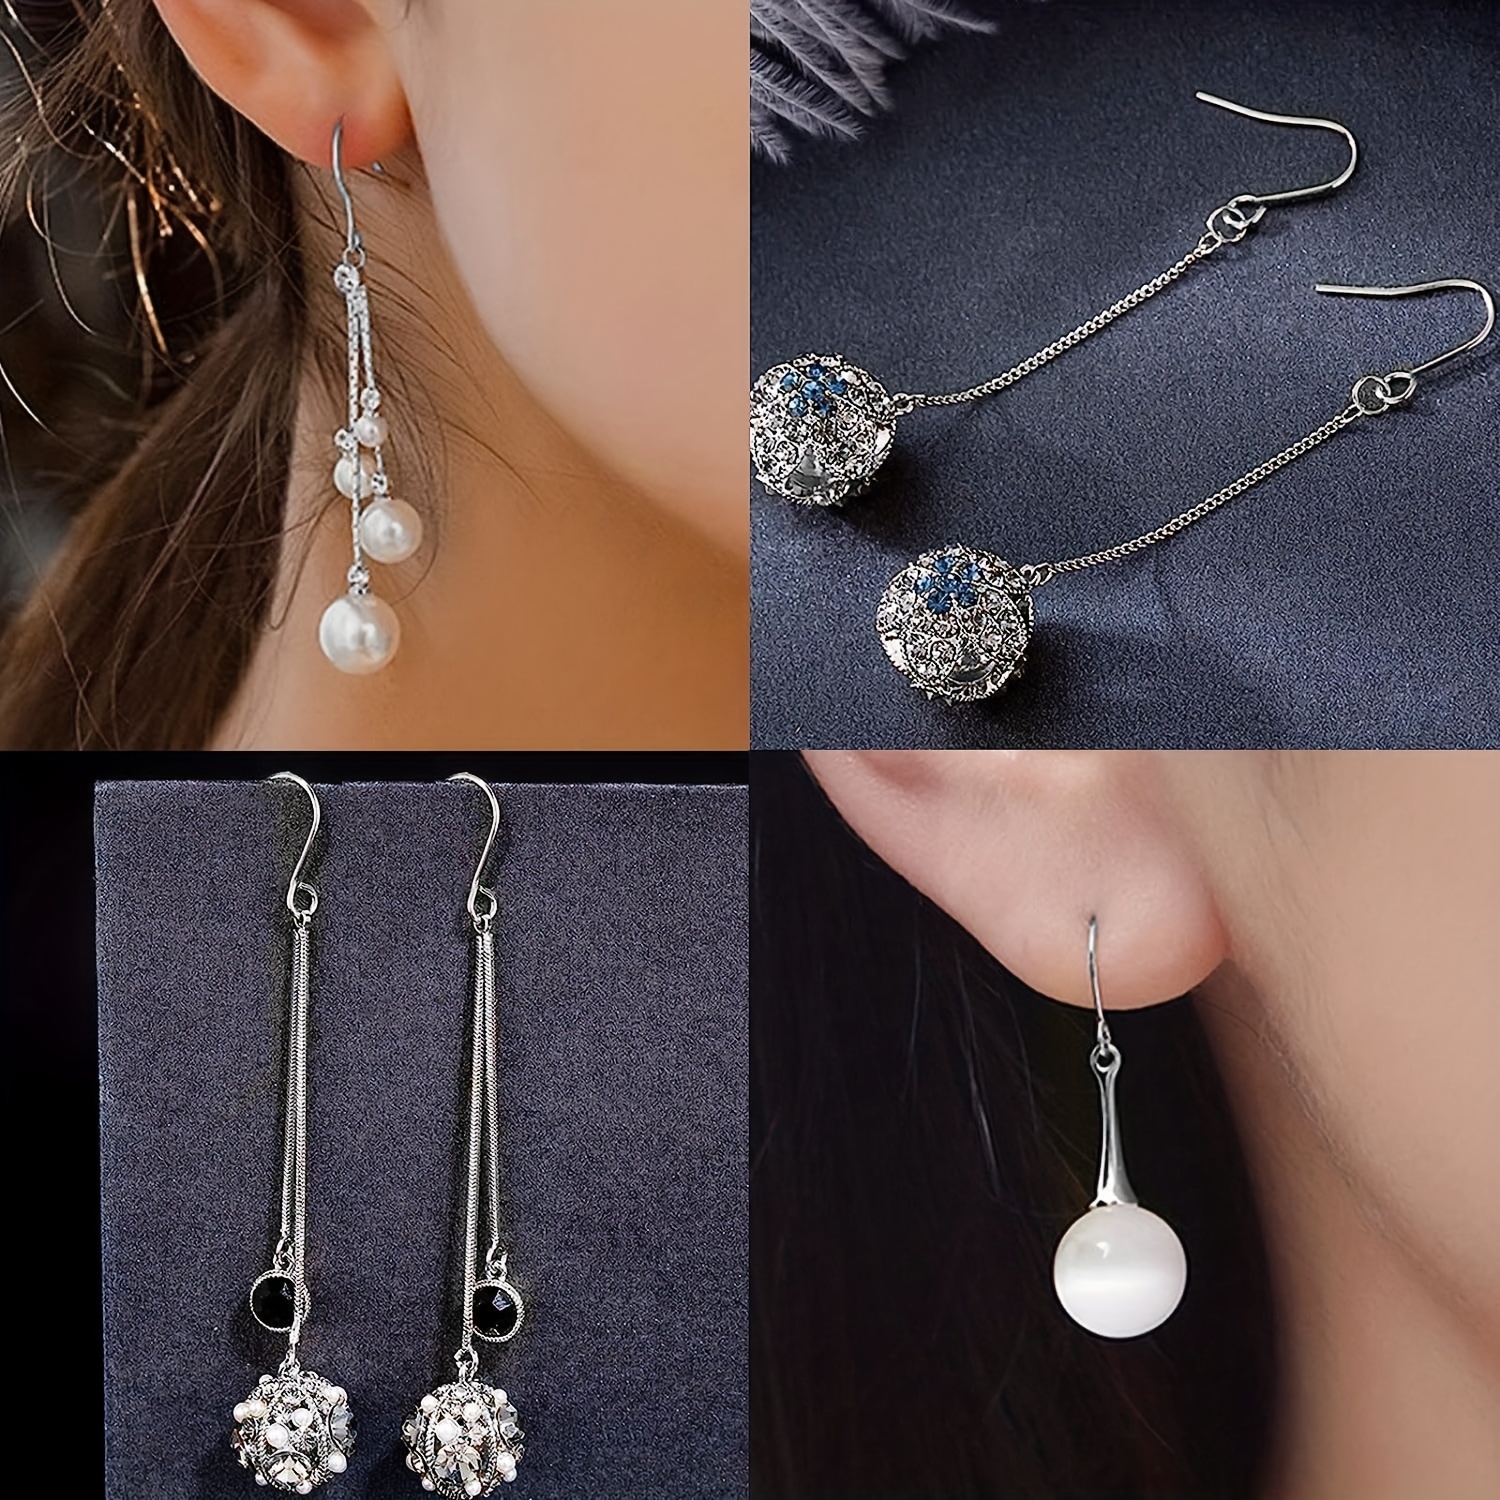 Silvery Golden Earring Hooks Jewelry Making Hypoallergenic - Temu